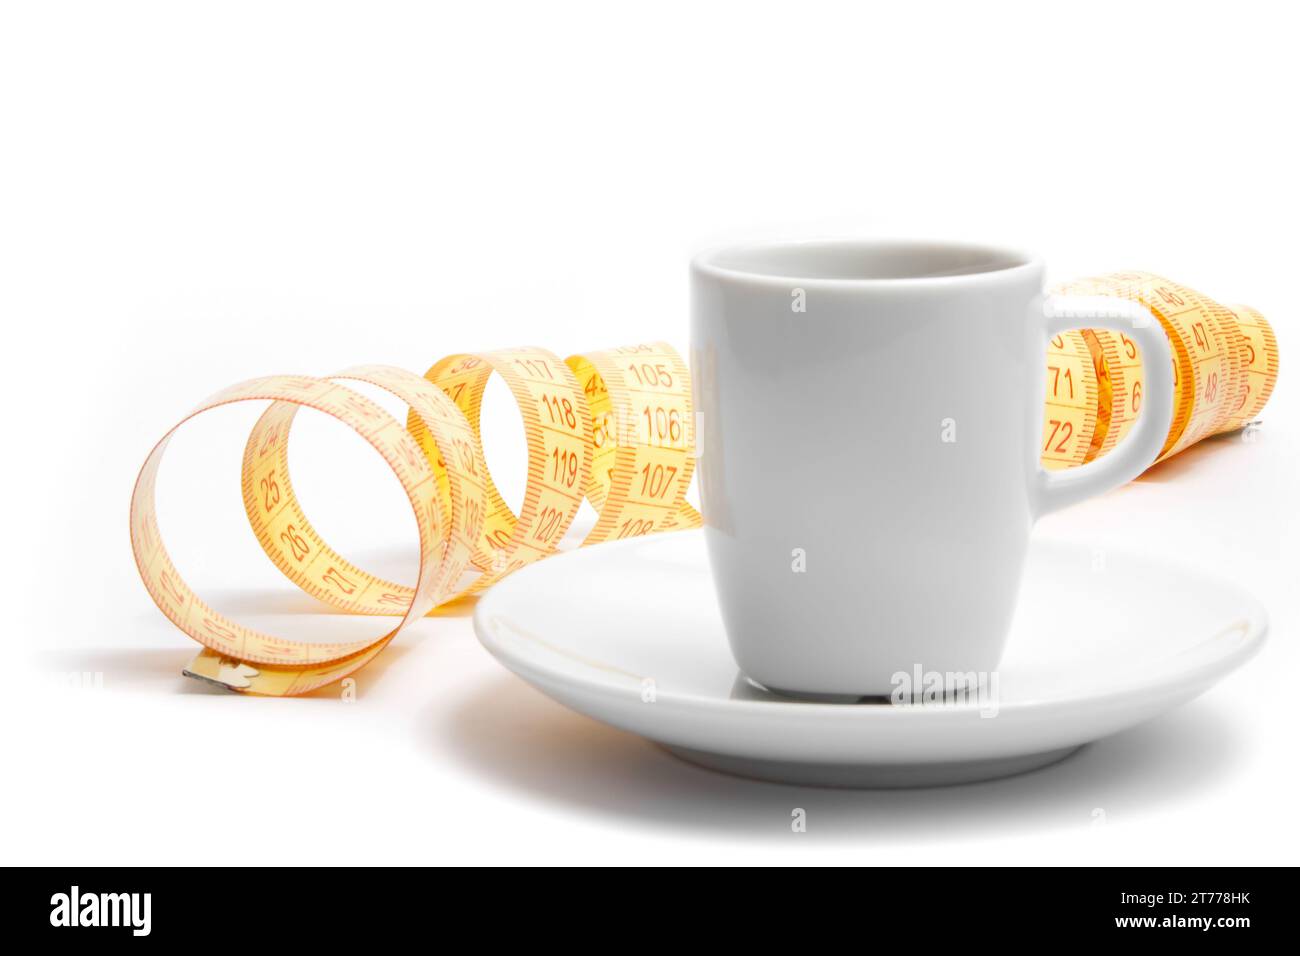 tazza di caffè con metro a nastro su sfondo bianco Foto Stock